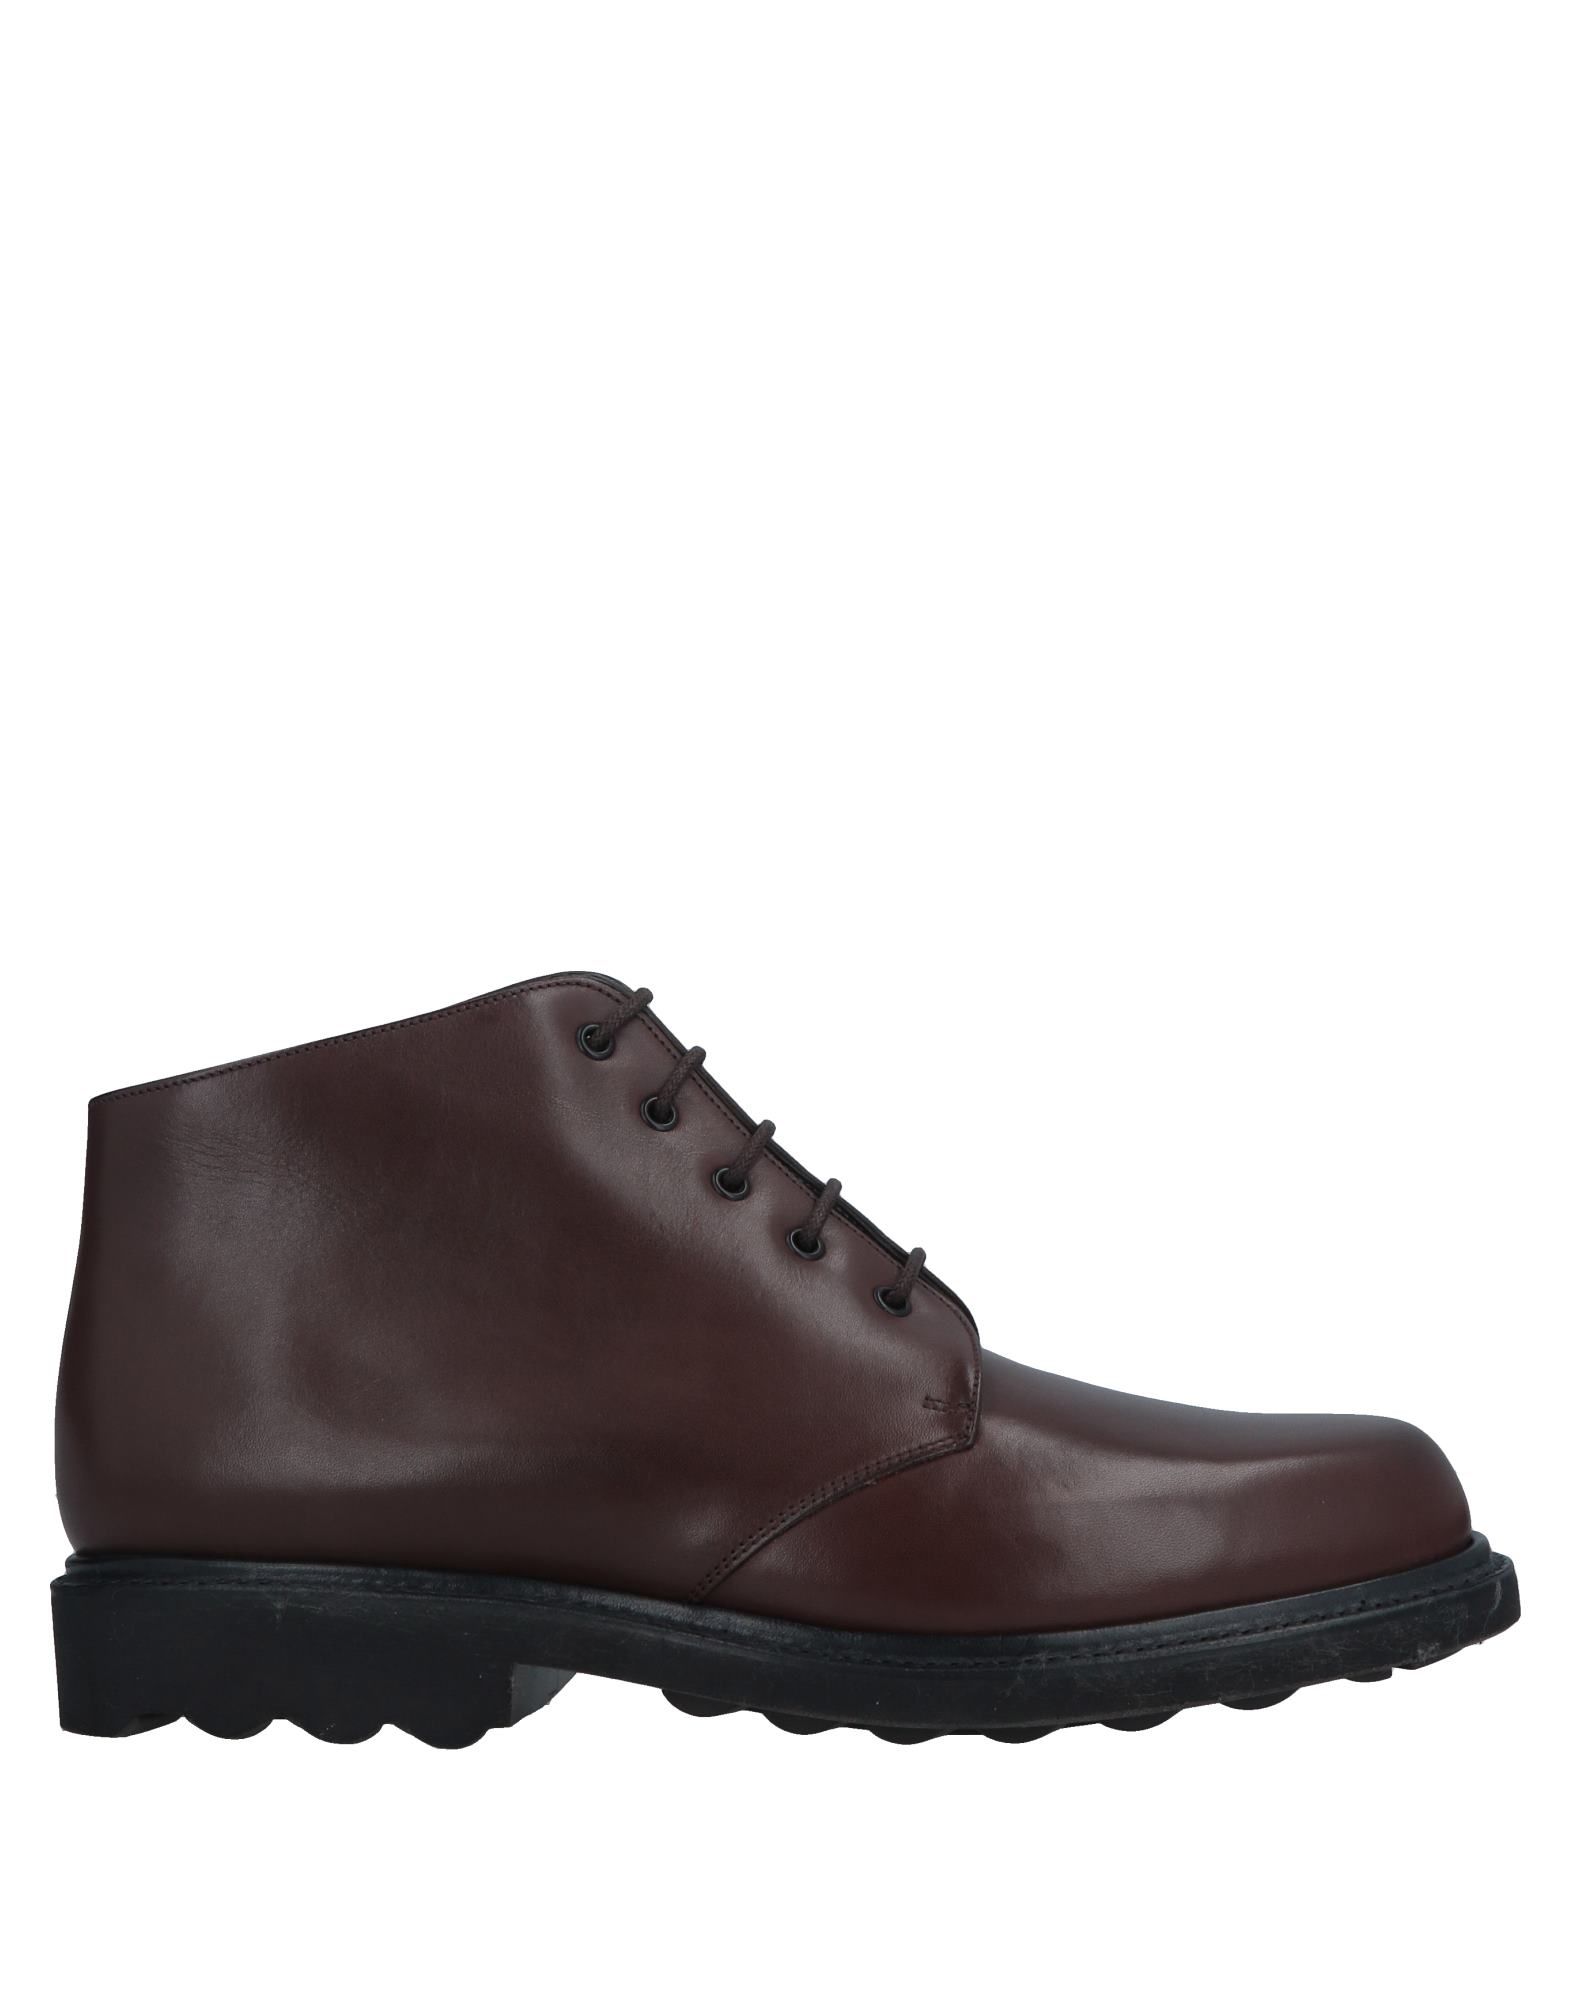 ROBERT CLERGERIE Boots,11661732TD 3